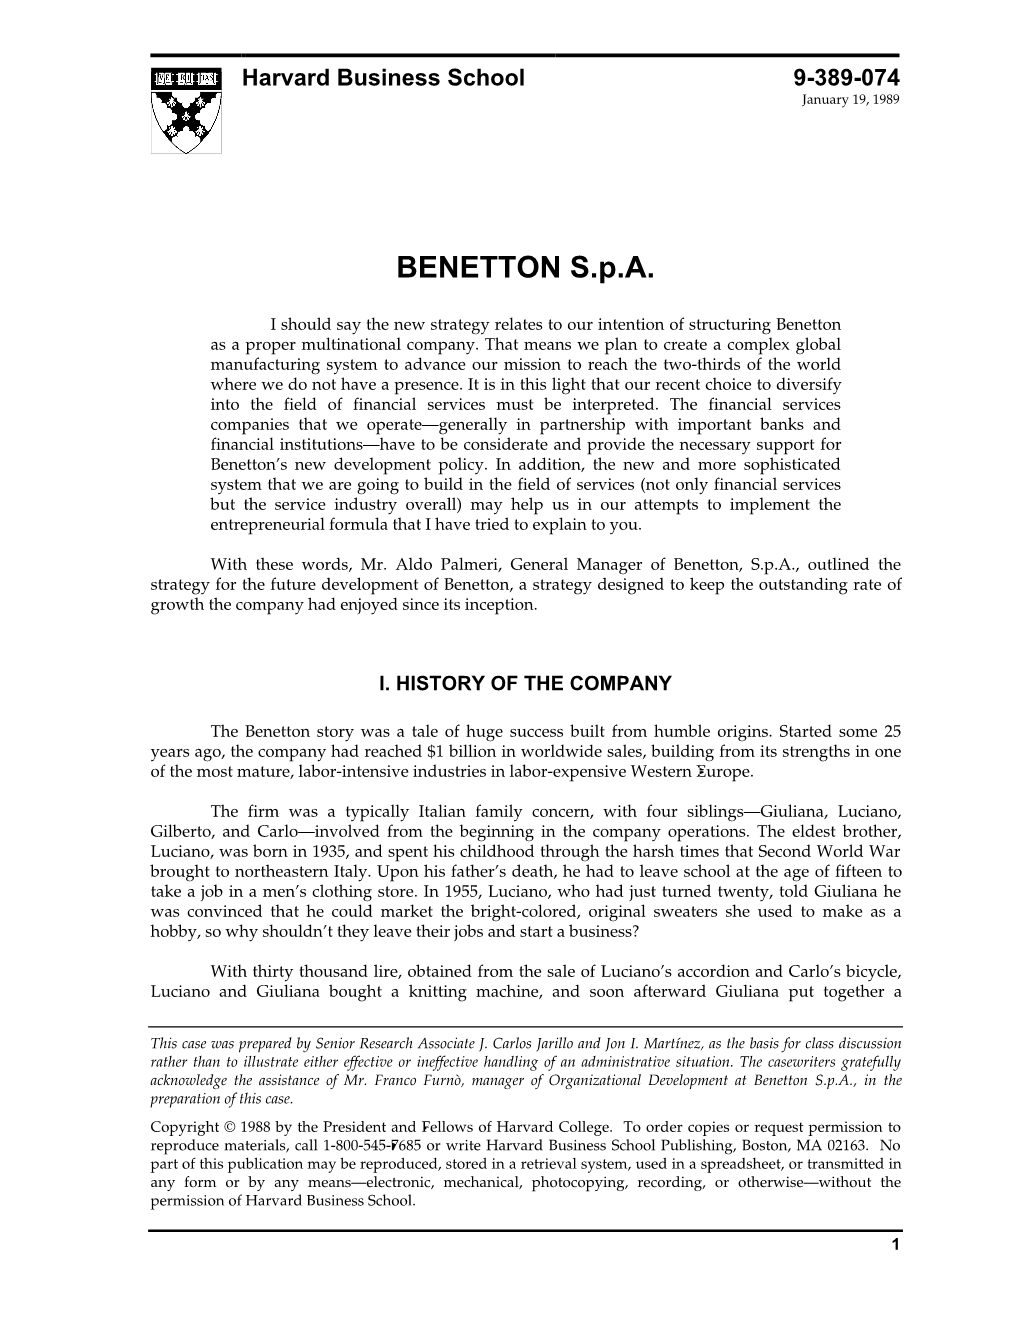 BENETTON S.P.A